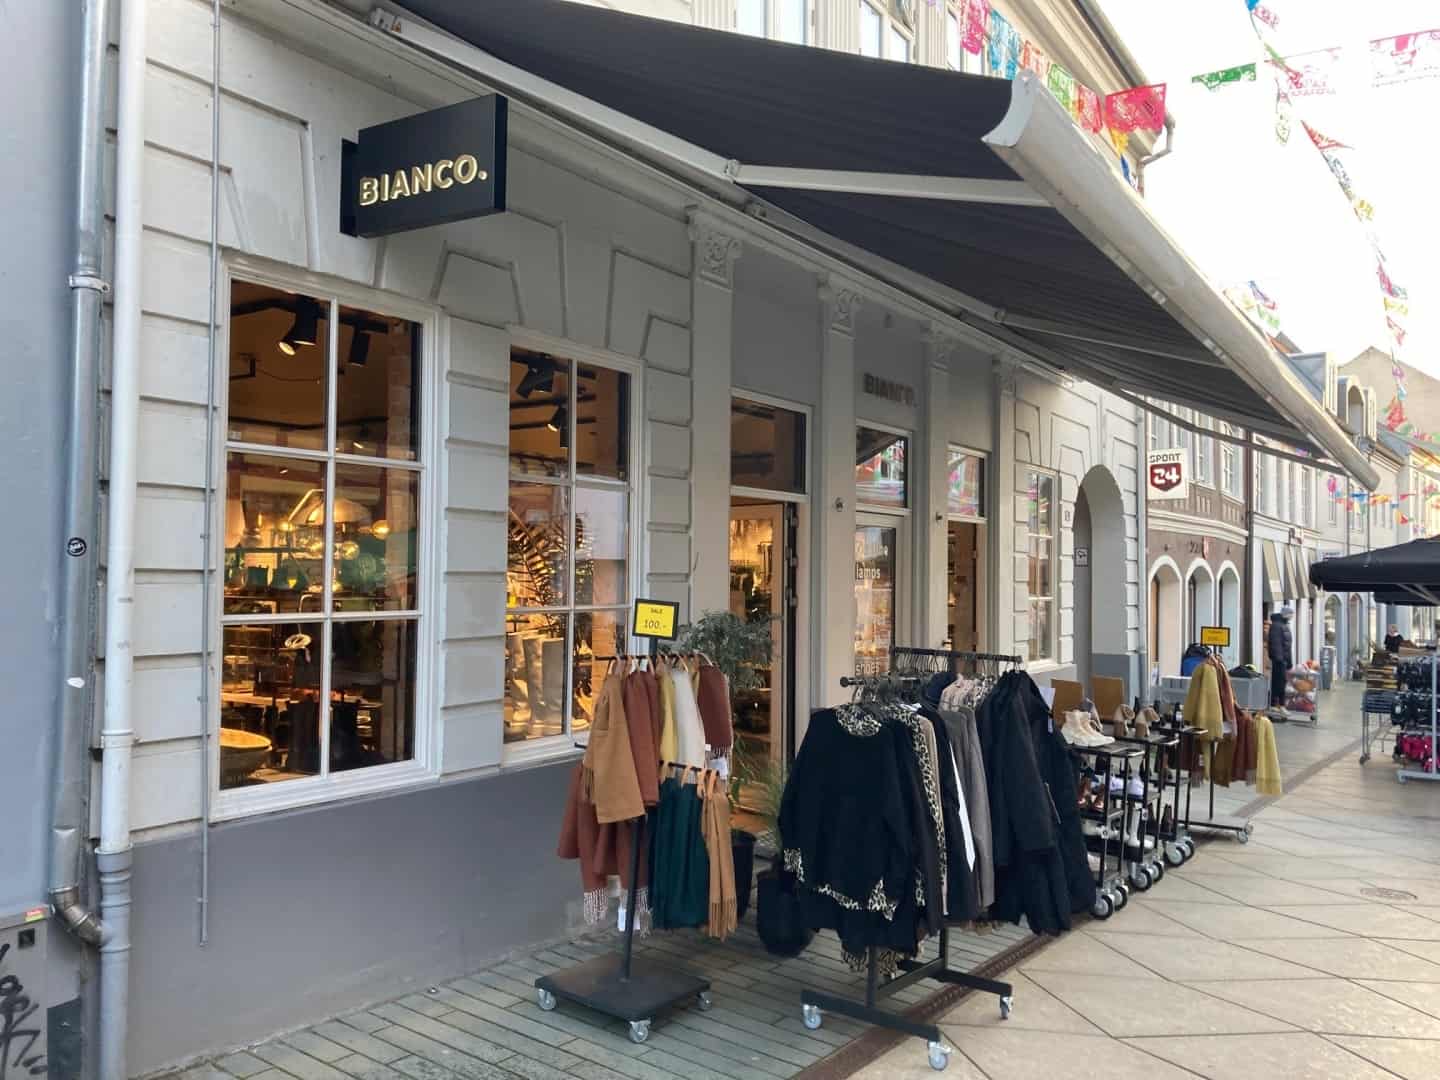 nylon Frosset rygte Bianco Sko lukker og slukker alle butikker: Et andet kendt brand overtager  lokalerne på gågaden i Vejle hurtigst muligt | vafo.dk